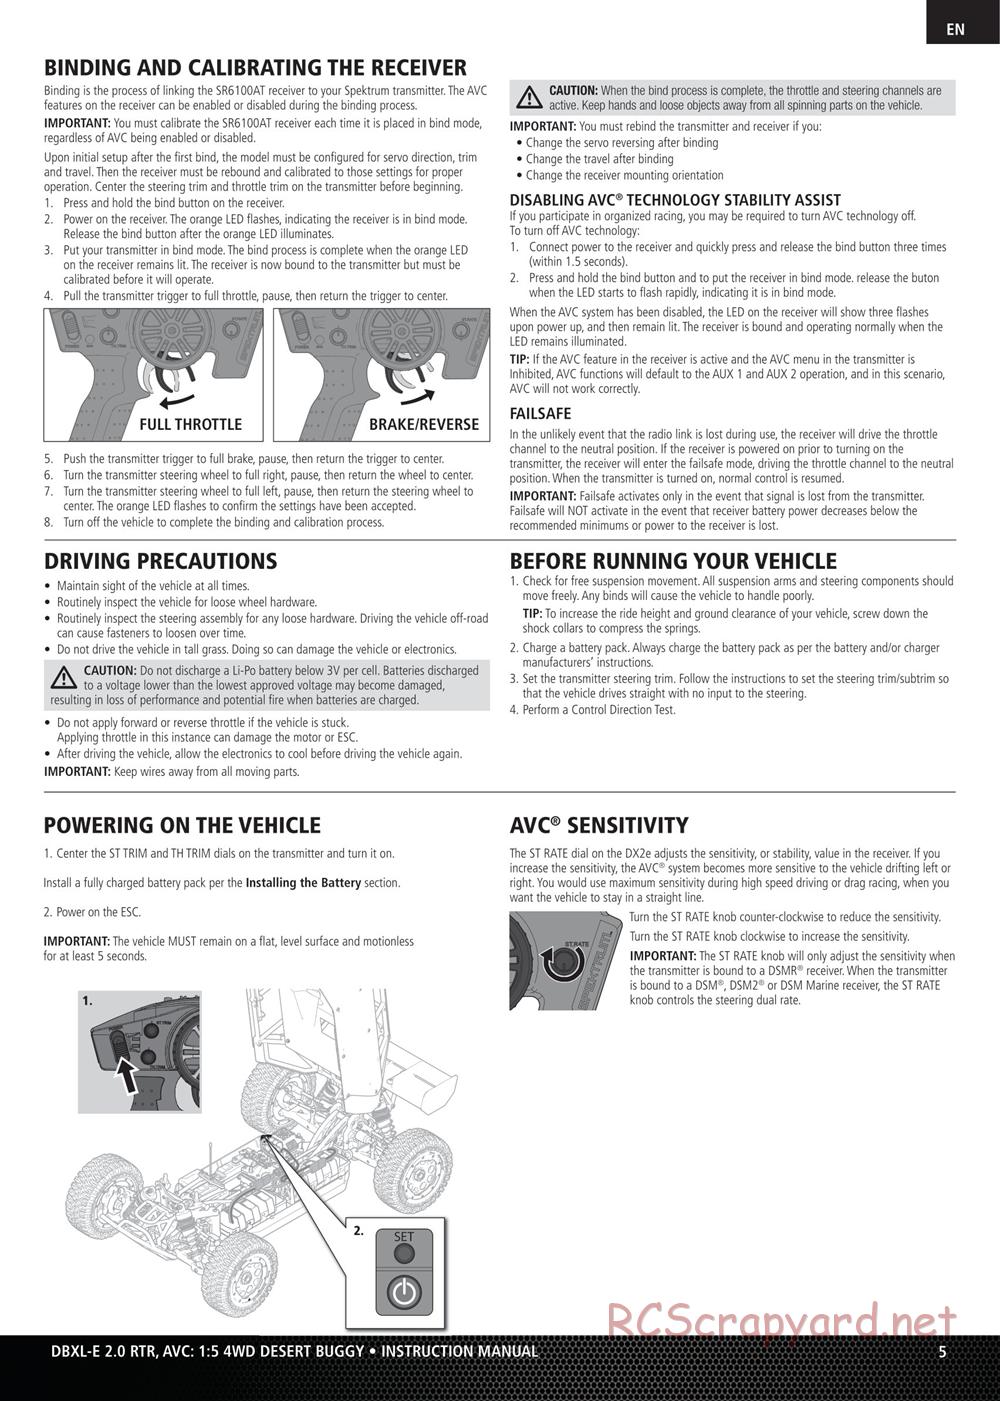 Team Losi - DBXL-E 2.0 - Manual - Page 5